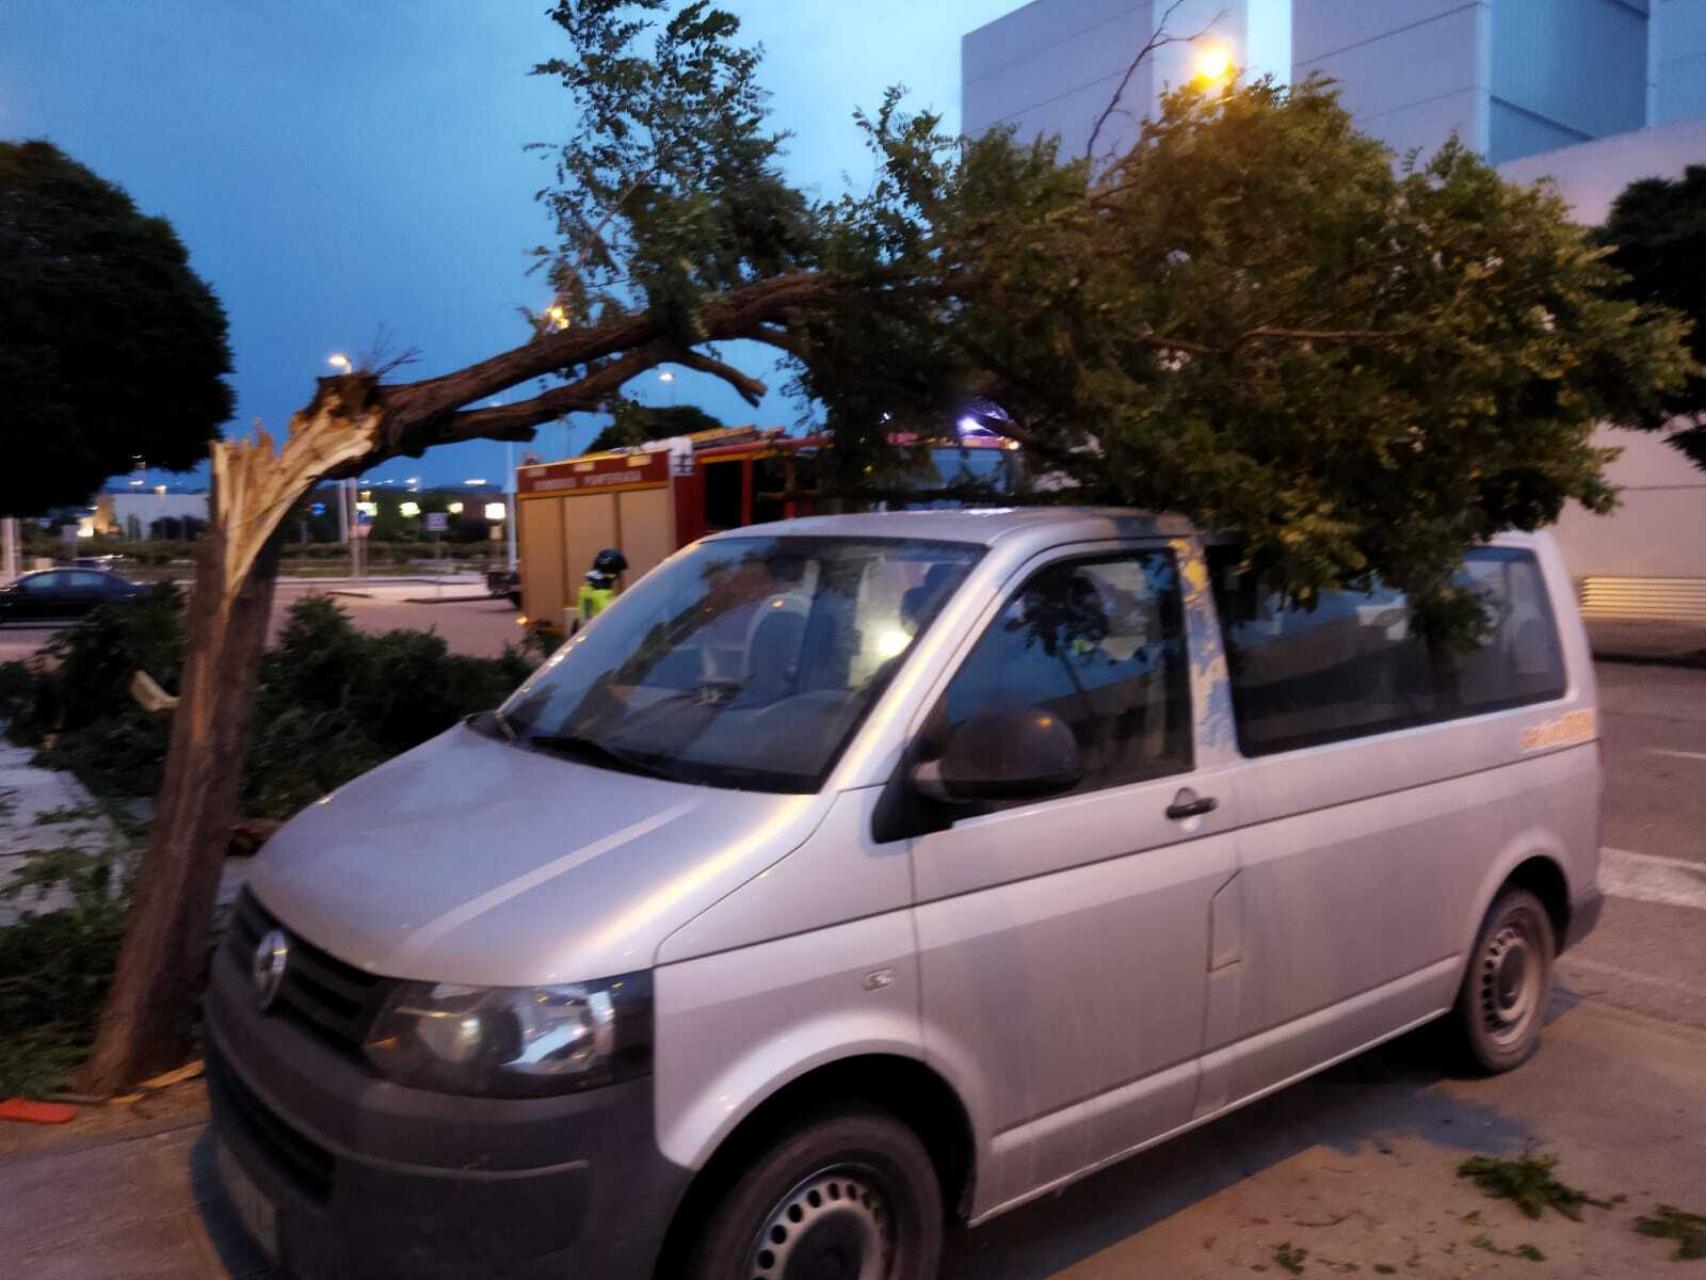 Una rama cae durante la tormenta sobre un vehículo en Ponferrada.